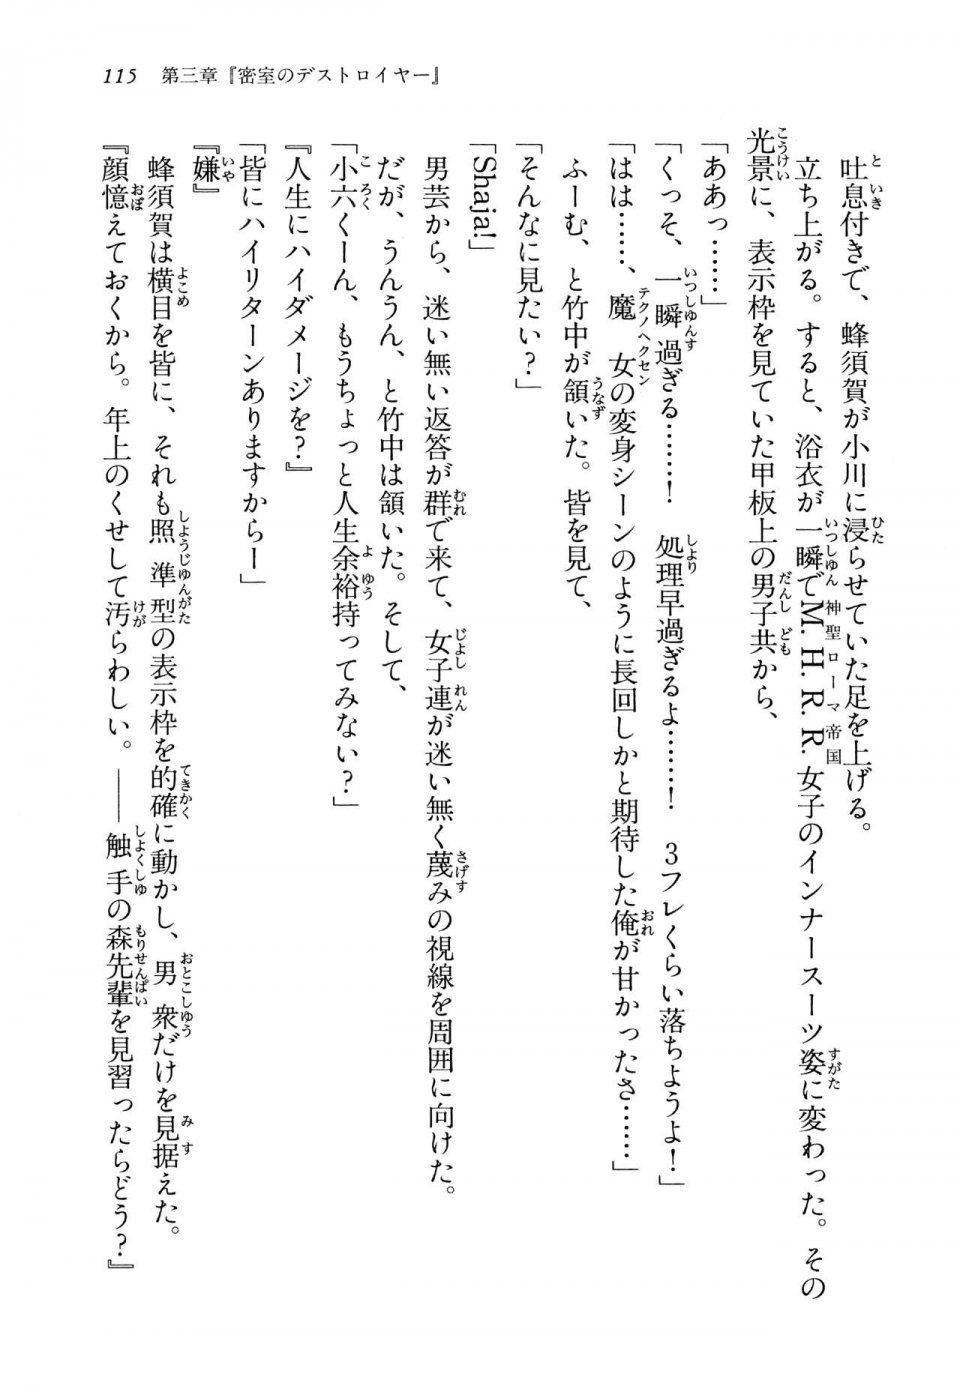 Kyoukai Senjou no Horizon LN Vol 13(6A) - Photo #115